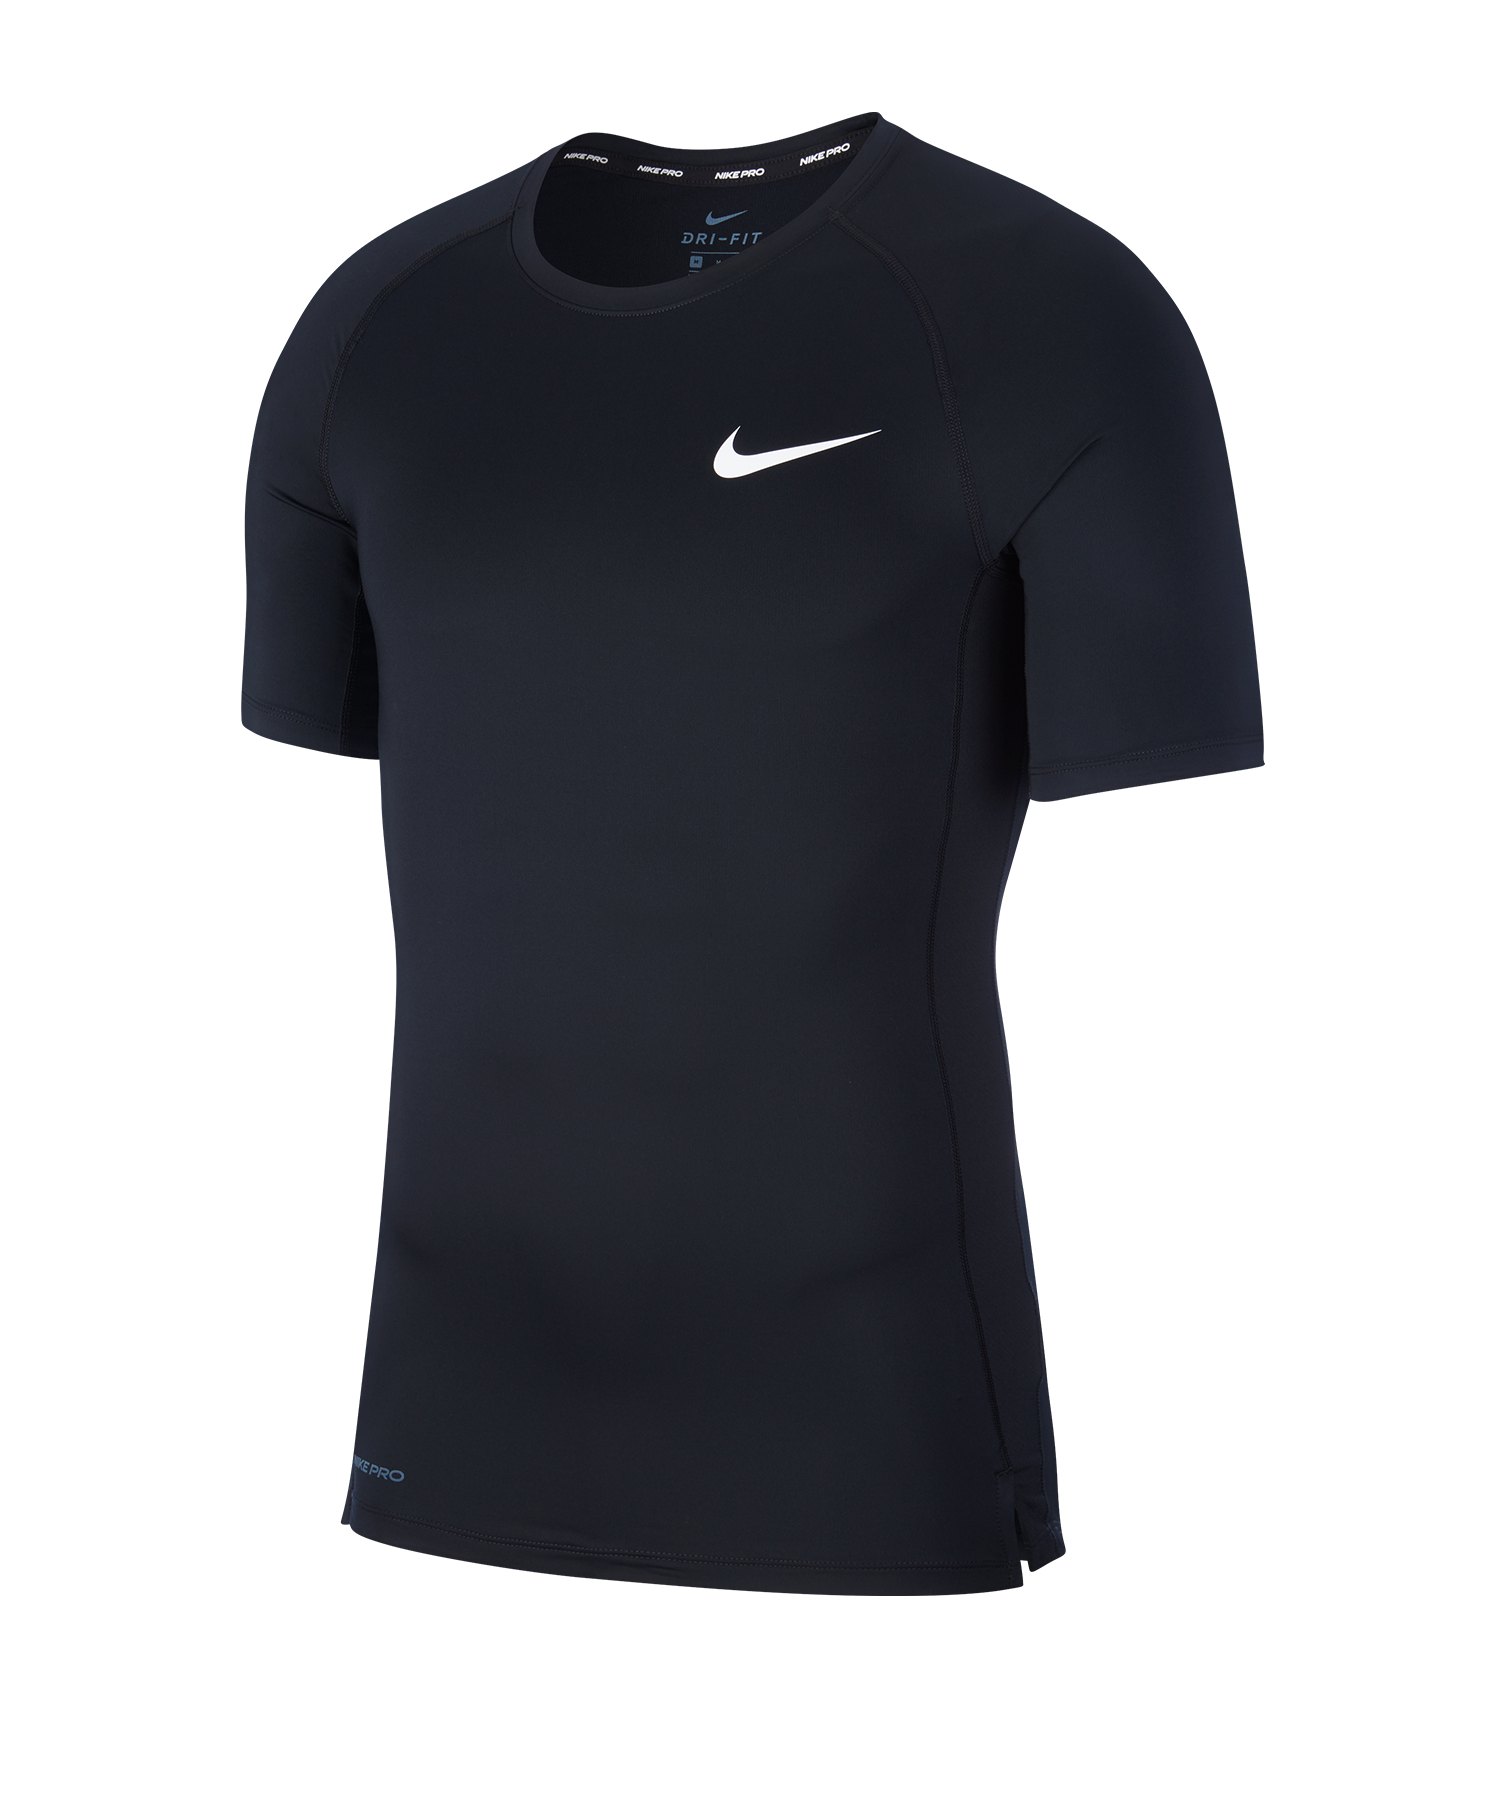 Nike Pro Trainingsshirt kurzarm Schwarz F010 - schwarz